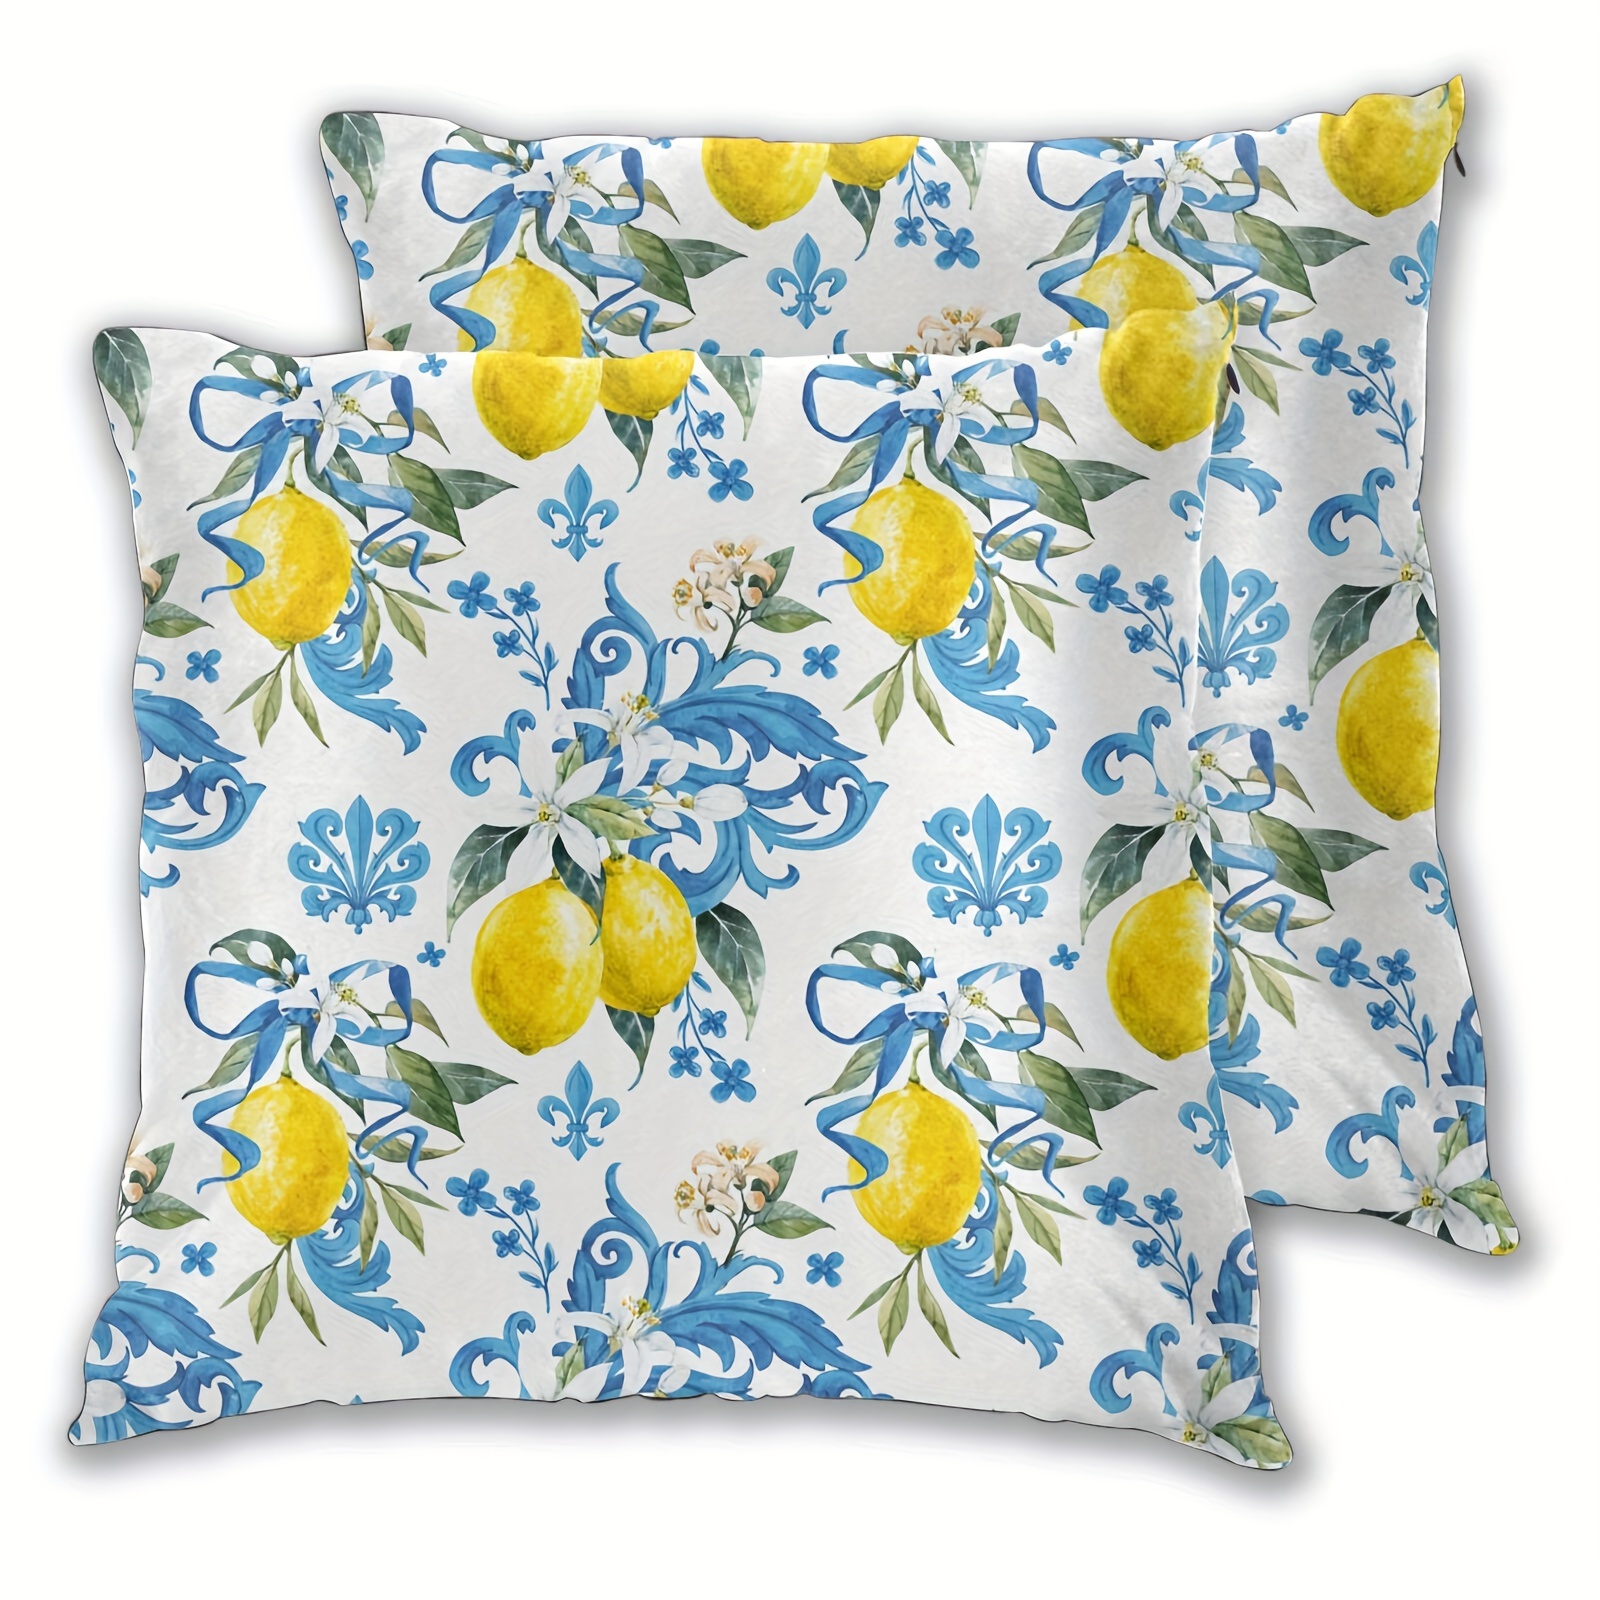 

2pcs Short Plush Blue Lemon Pillow Cover 18x18 Inch Decor Farmhouse Seasonal Pillow Case Decorations For Home Sofa Couch